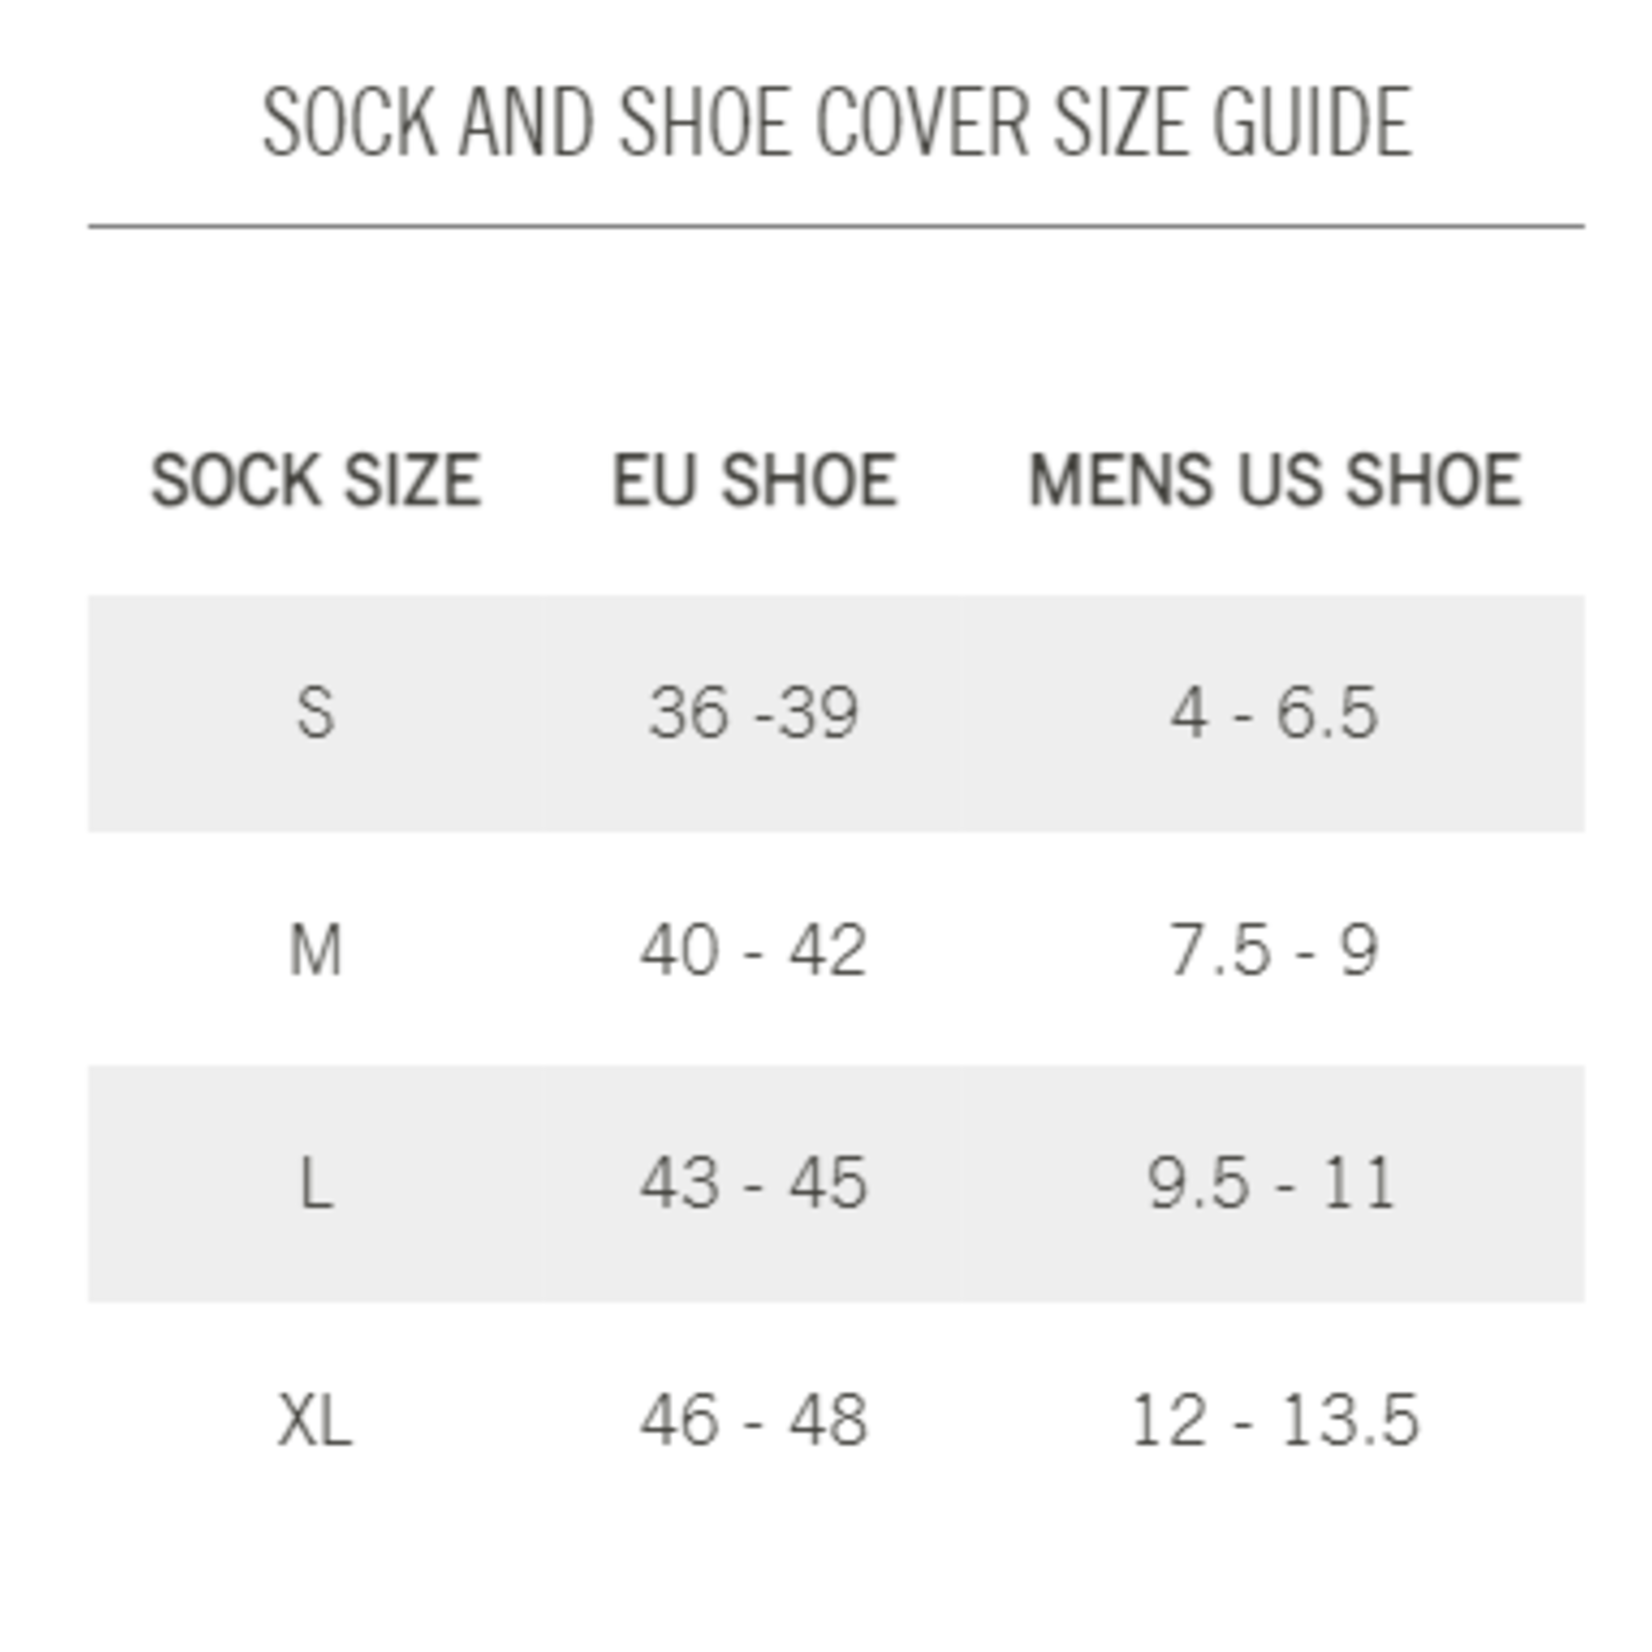 Giro Winter Merino Wool Socks Black